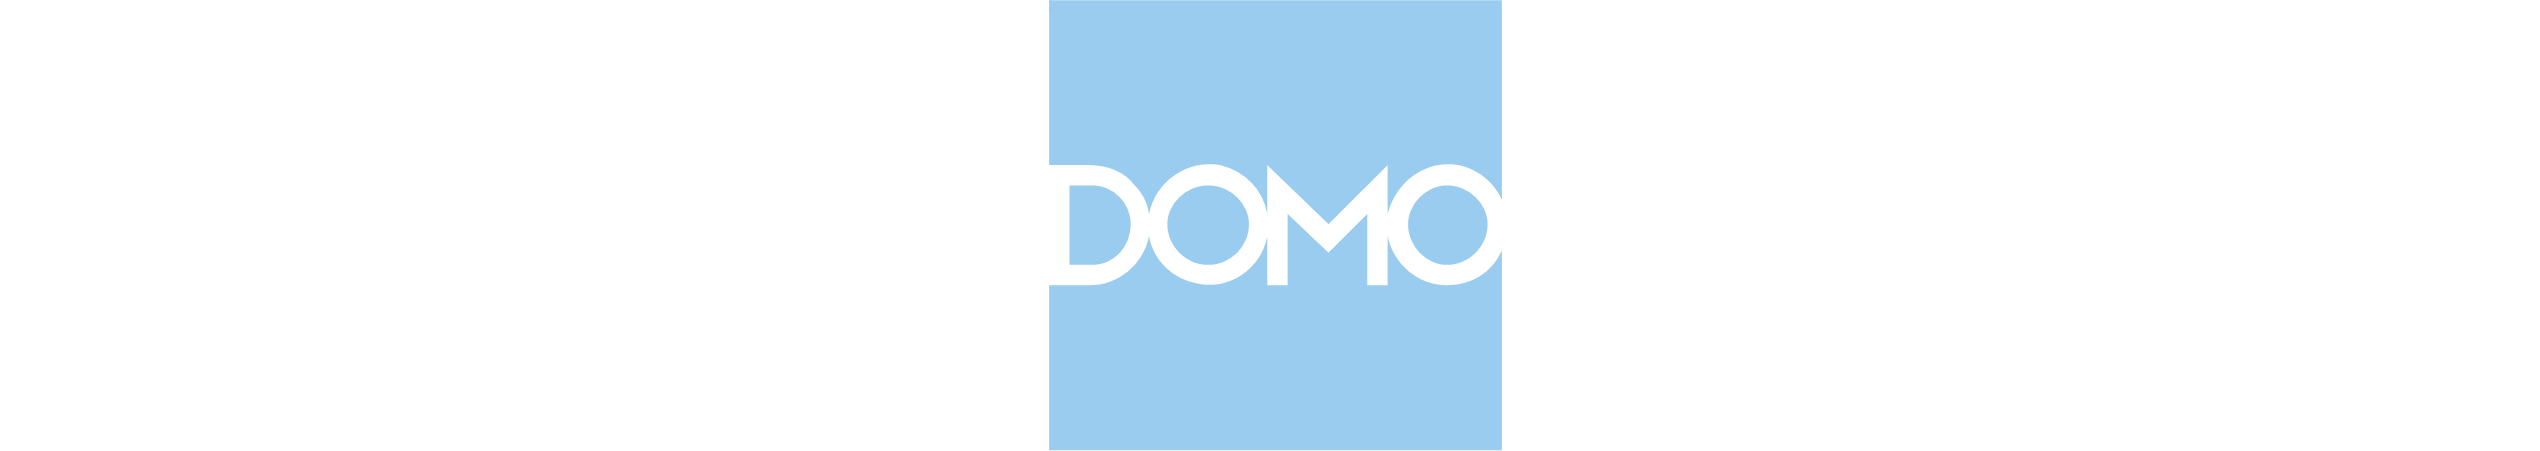 Domoロゴ